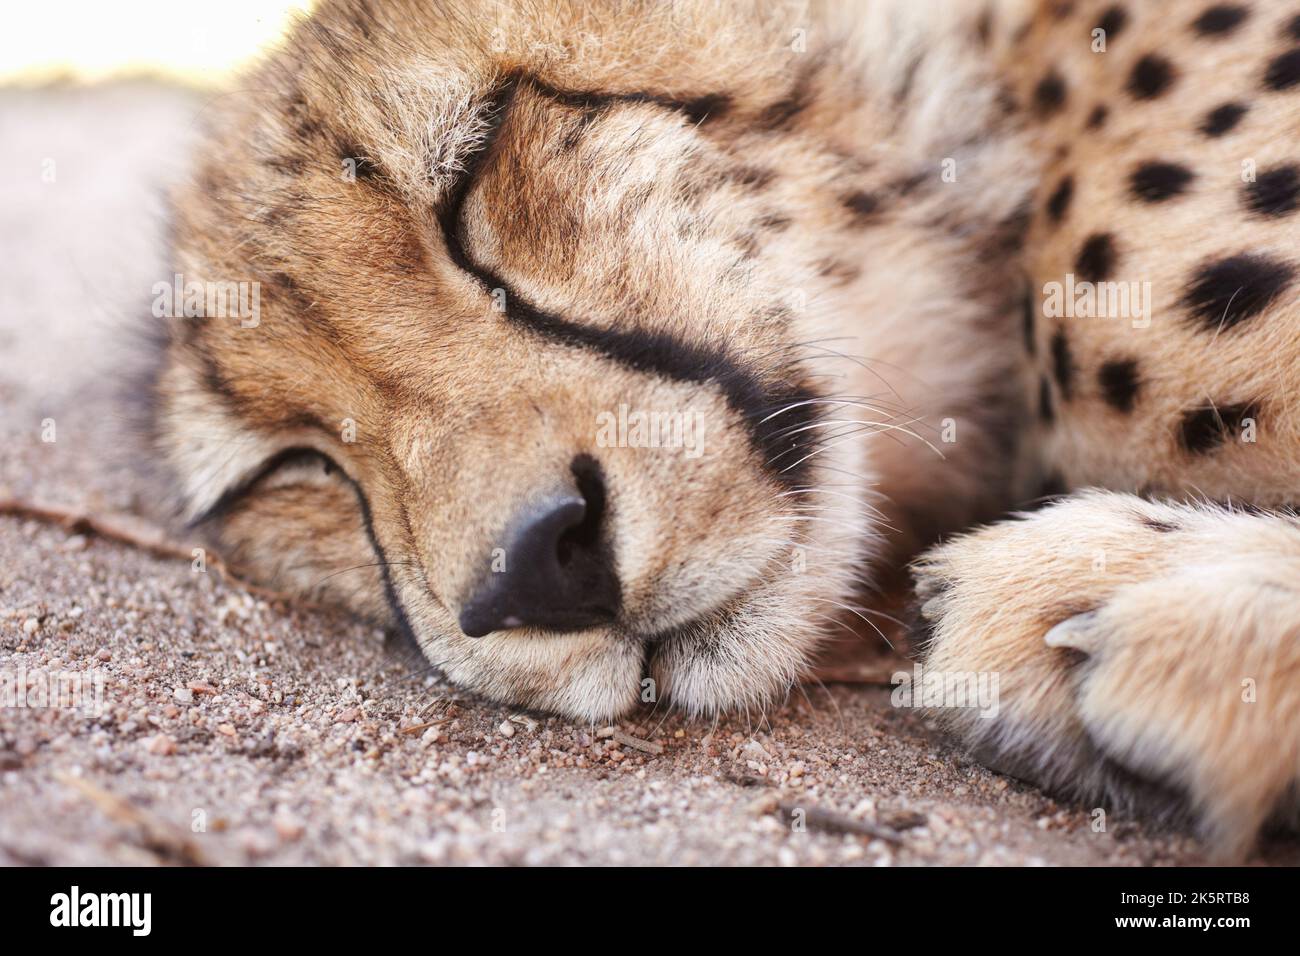 Cheetah, la faune et les jeunes animaux dormant, se reposer ou se détendre dans un zoo où il a tenu en captivité. Gros plan sur le prédateur, le chasseur ou le chat sauvage qui se repose Banque D'Images